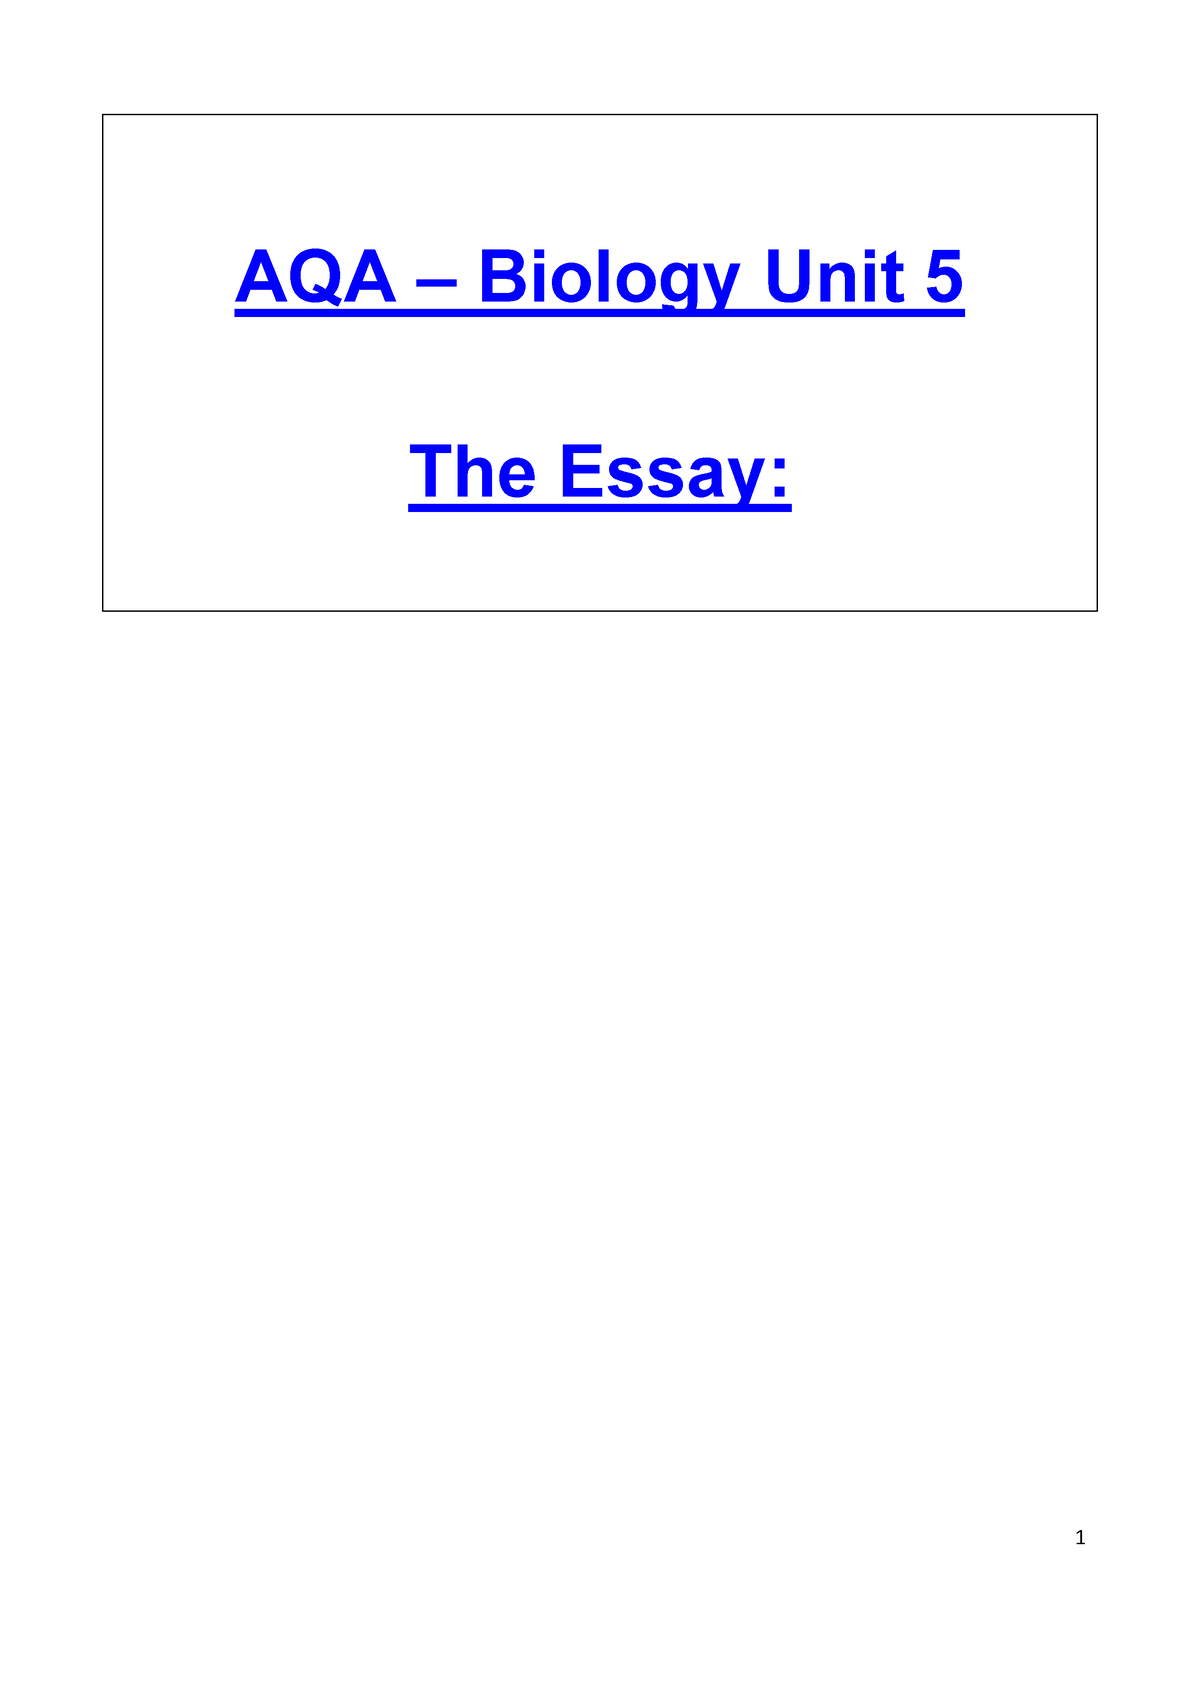 aqa a level biology synoptic essay mark schemes